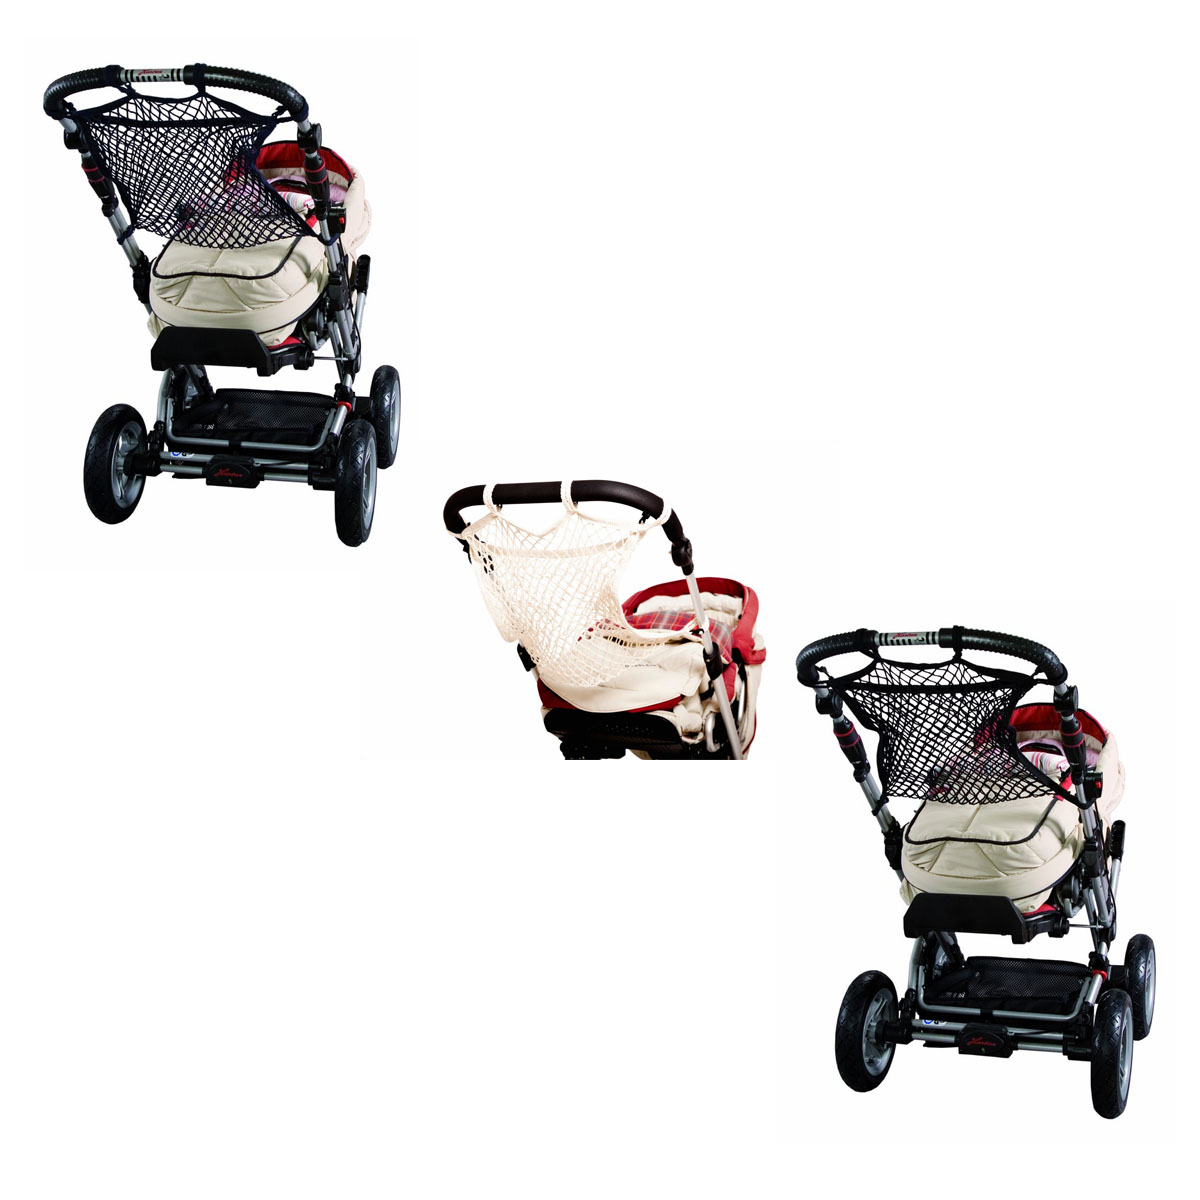 SUNNY BABY Einkaufsnetz ROT Kinderwagen-Netz Kinderwagennetz Karabiner NEU 